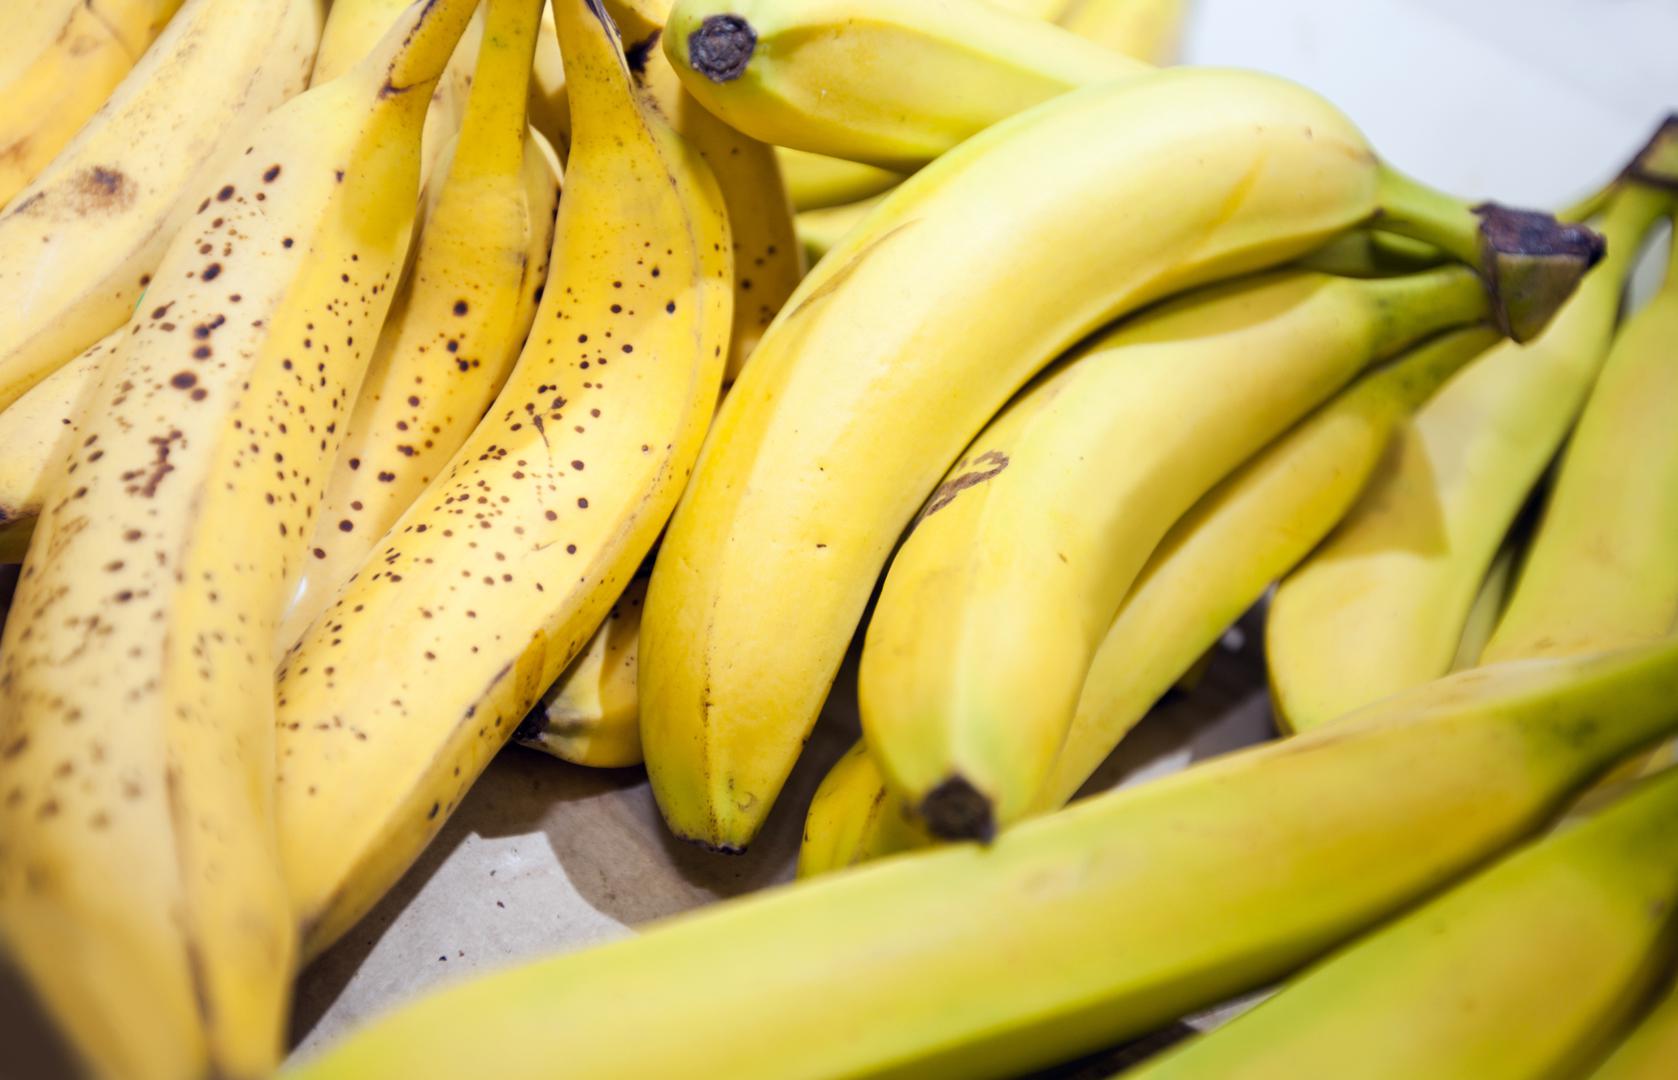 Jedan od najčešćih uzroka za grčenje mišića jest manjak kalija u tijelu  stoga se preporučuje jesti  namirnice koje obiluju ovim mineralom, poput banana i krumpira. 